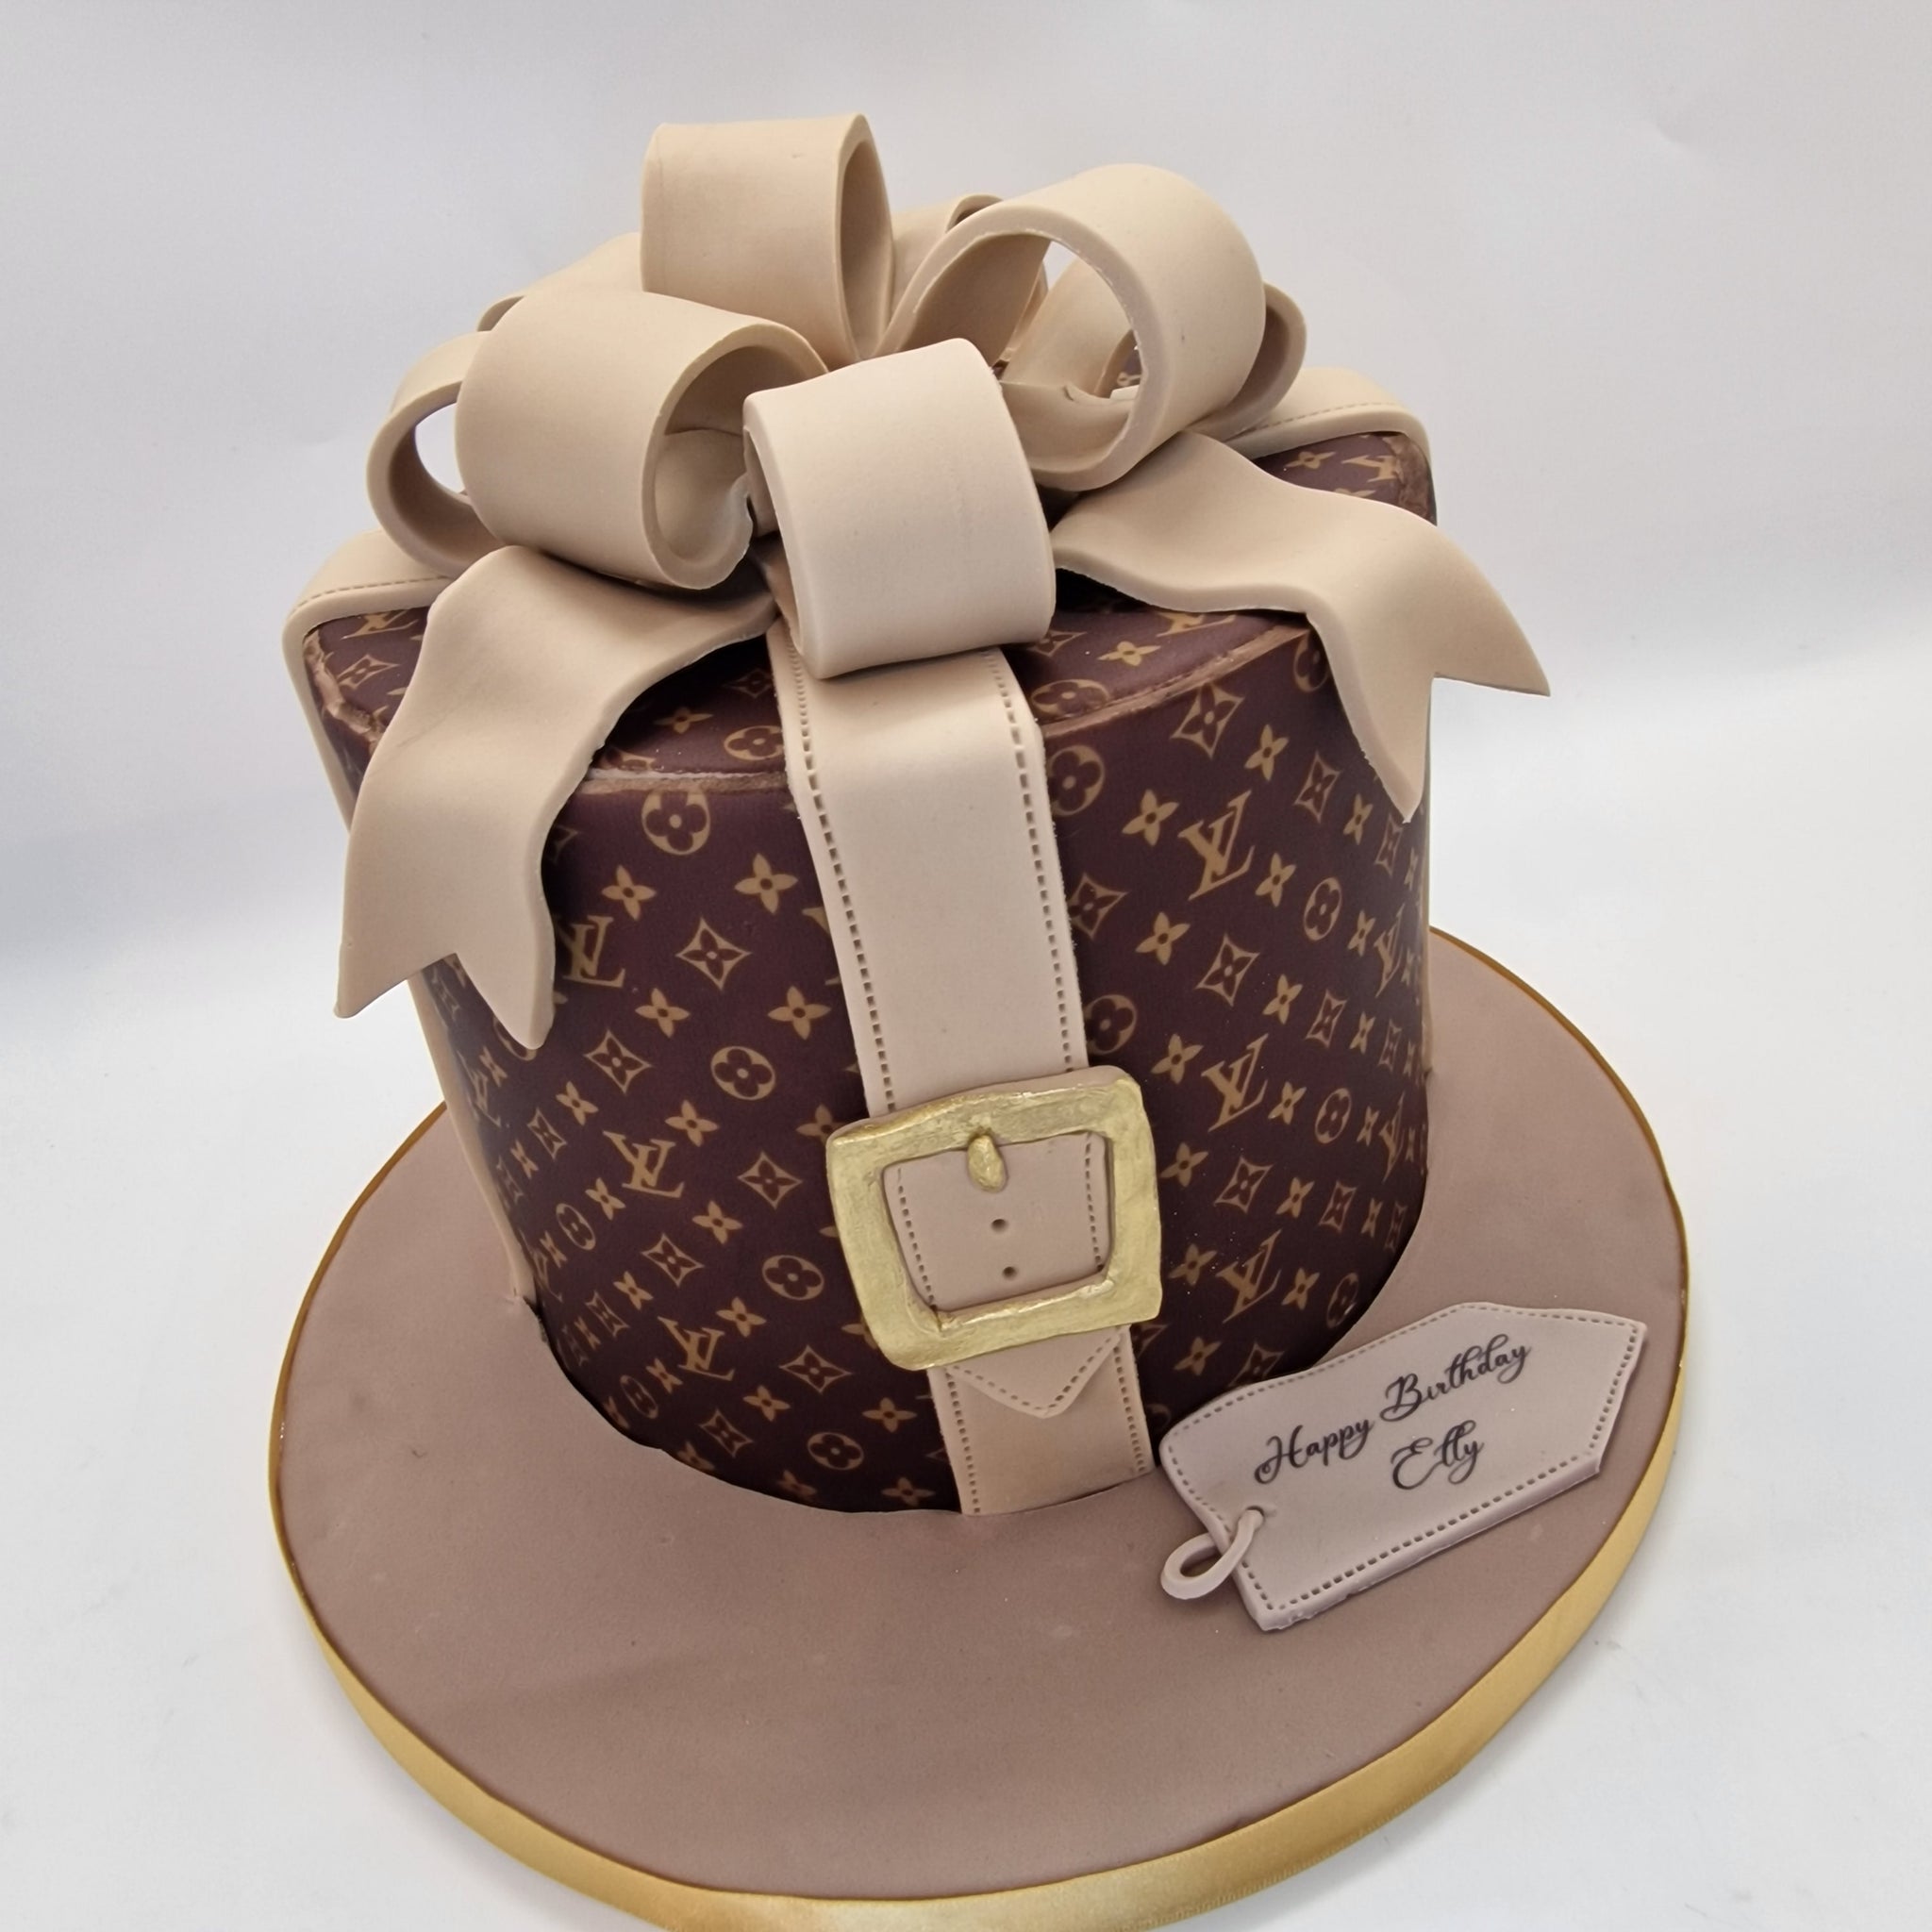 Louis Vuitton cake  Louis vuitton cake, Louis vuitton, Vuitton